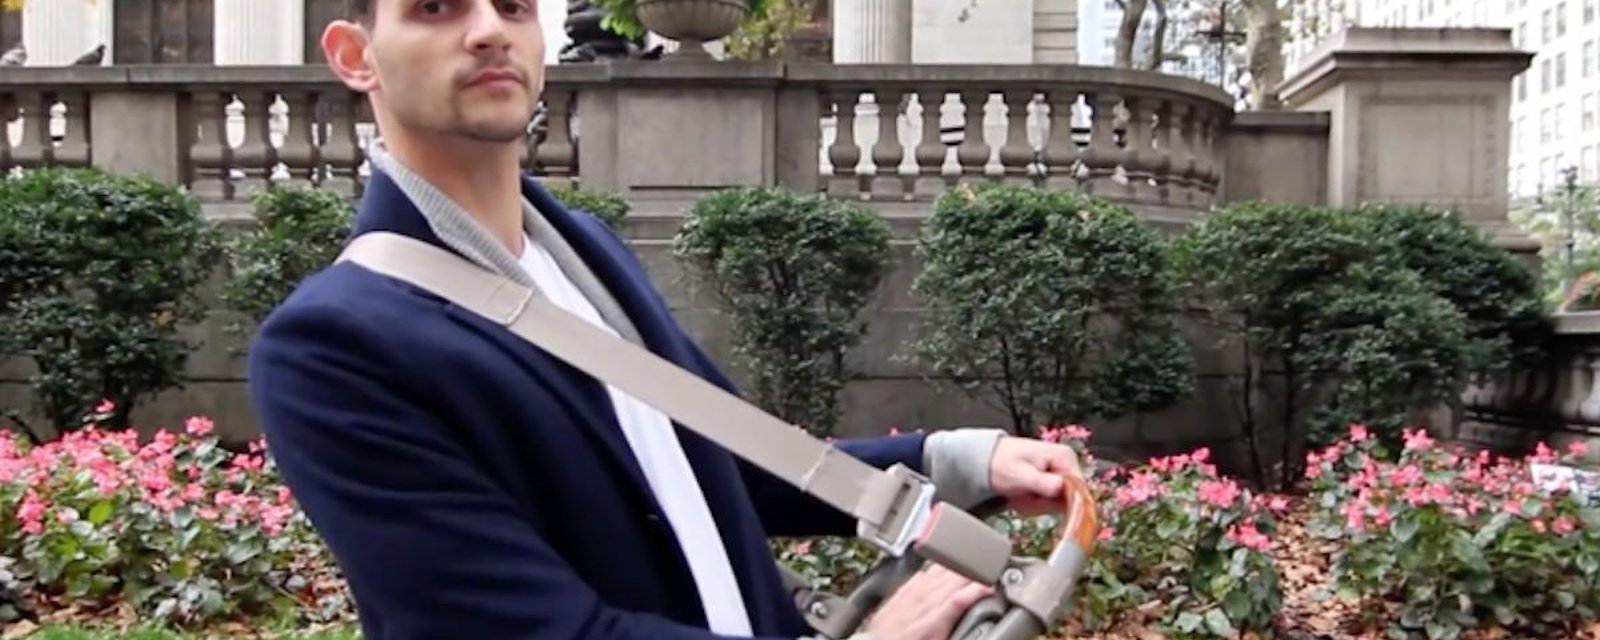 Vidéo: Pour se faire respecter sur les rues bondées, un homme crée un klaxon pour piétons!